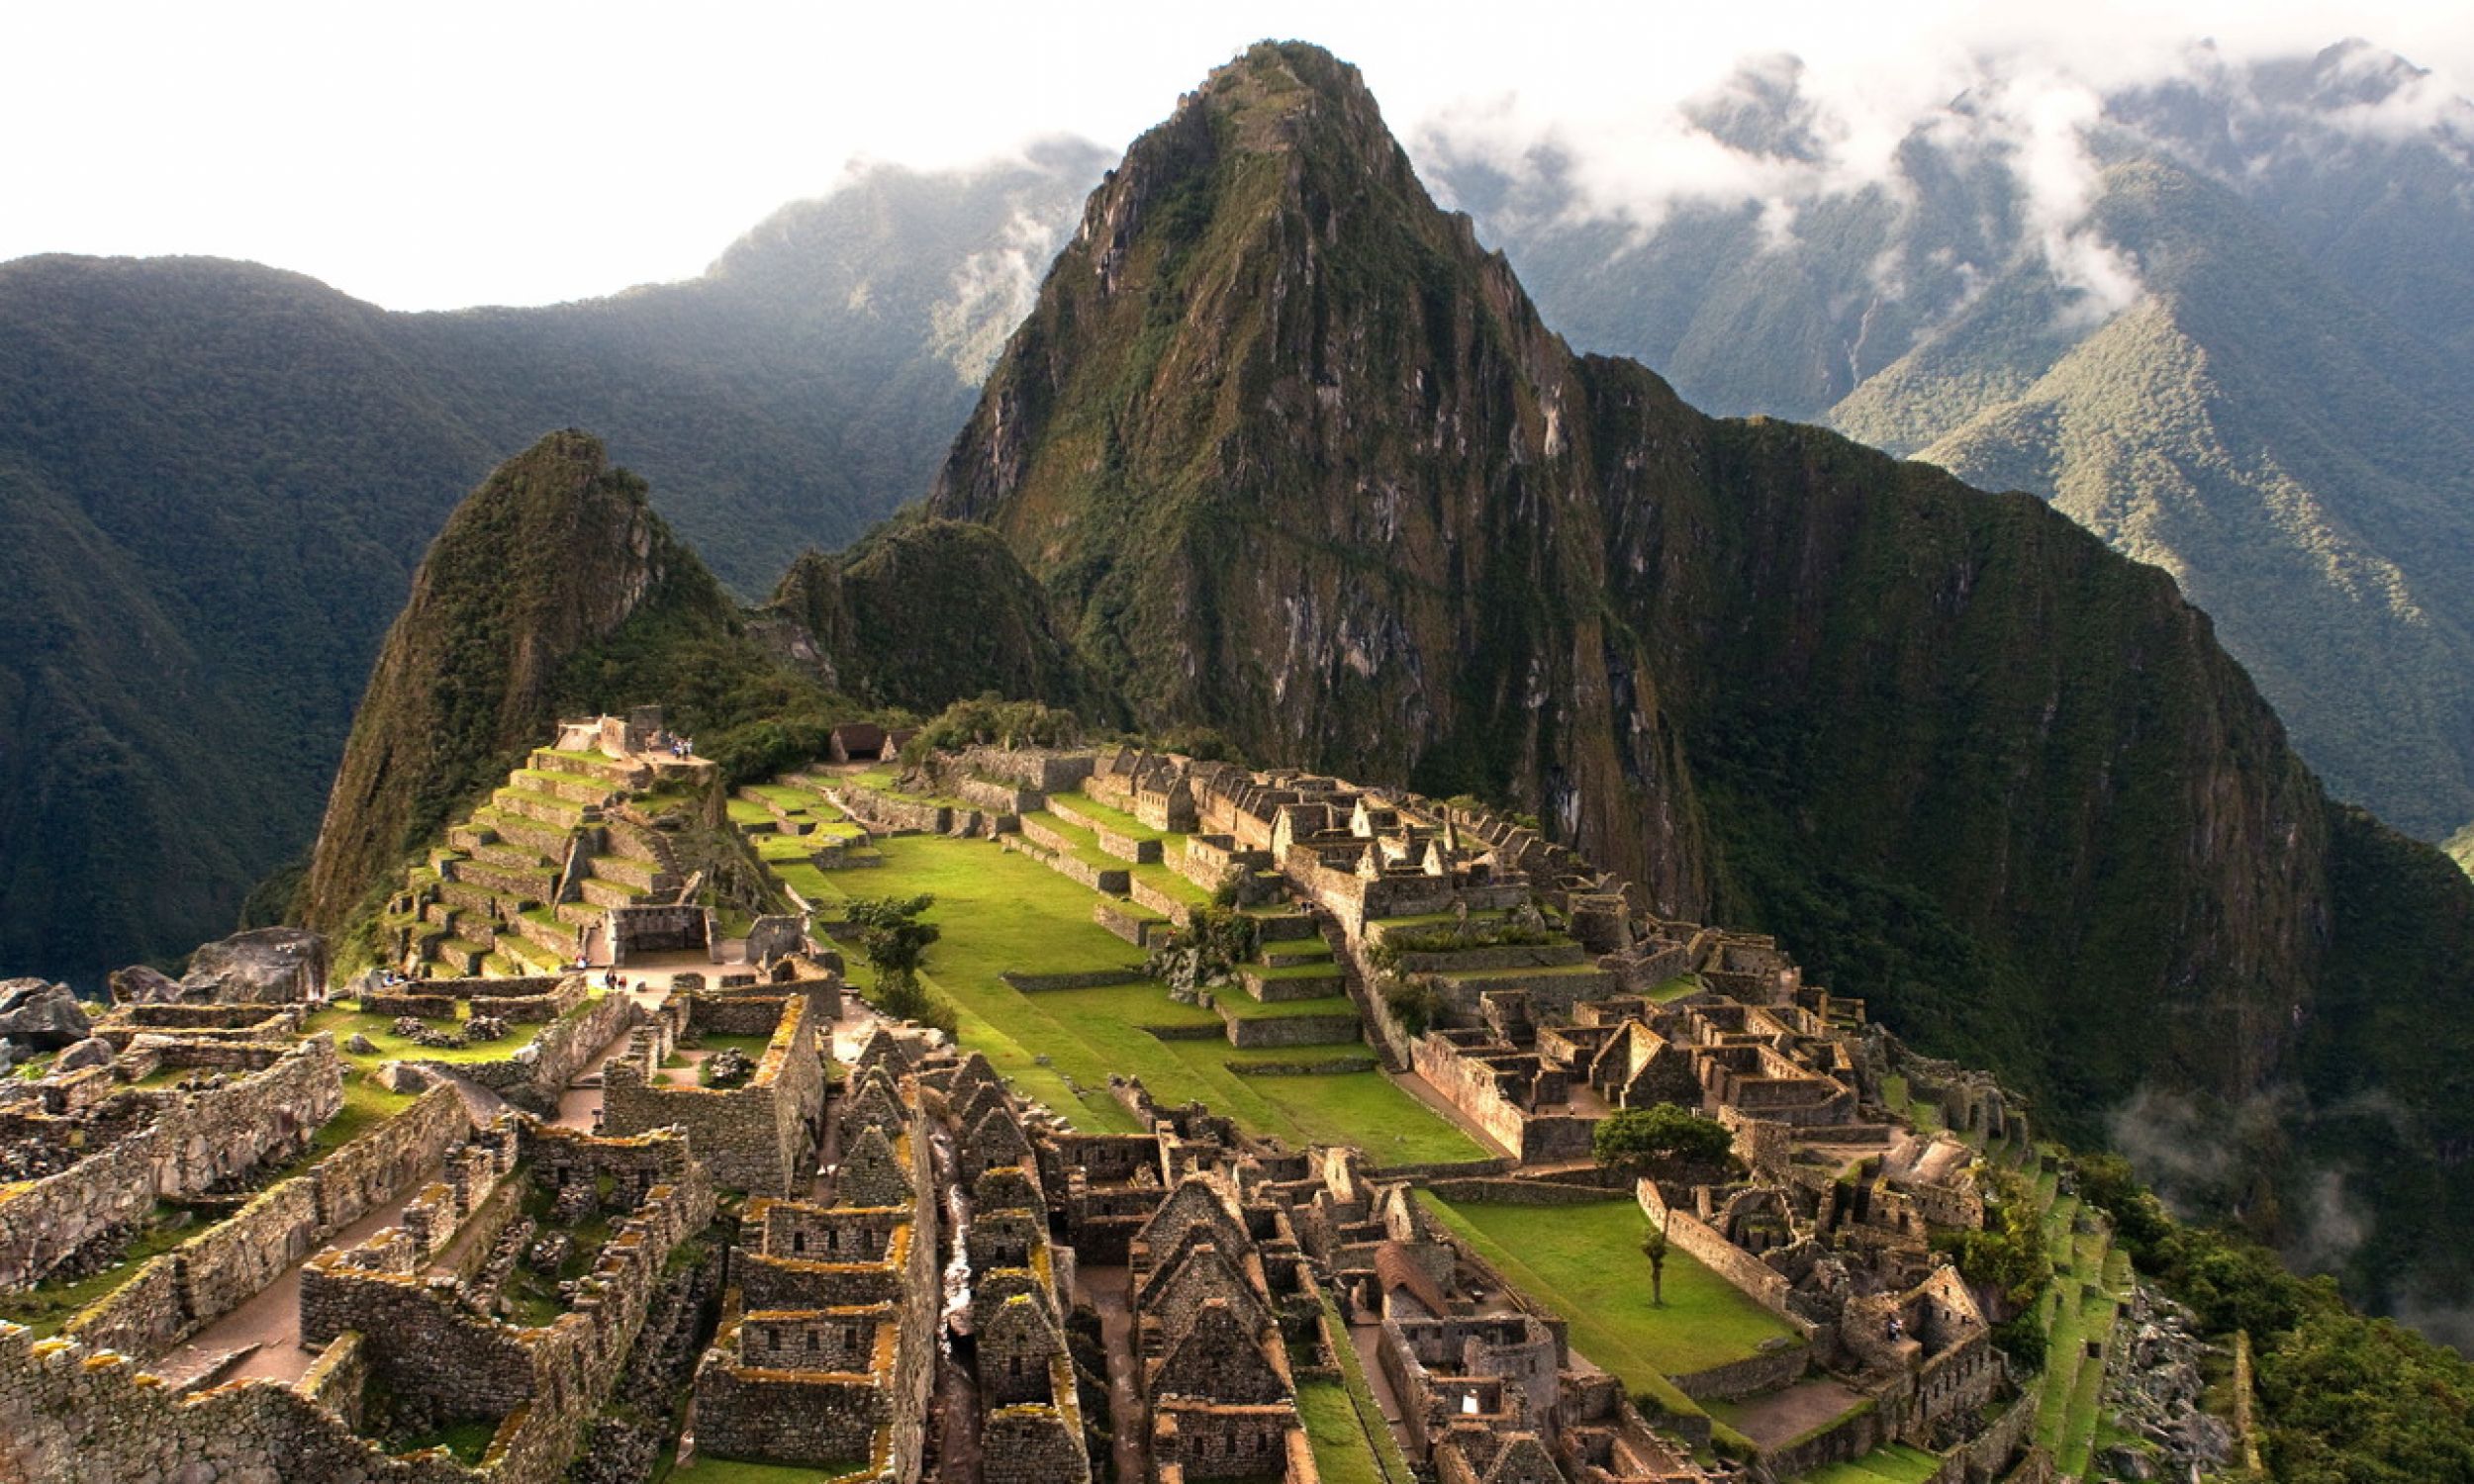 Вид на пейзаж Мачу-Пикчу, города, расположенного на высоте 2 430 м над уровнем моря в горах Анд на территории современного Перу, к северо-западу от Куско. Окрестности покрыты густым кустарником. Это, вероятно, самое удивительное городское творение империи инков. Фото: PAP/Photoshot